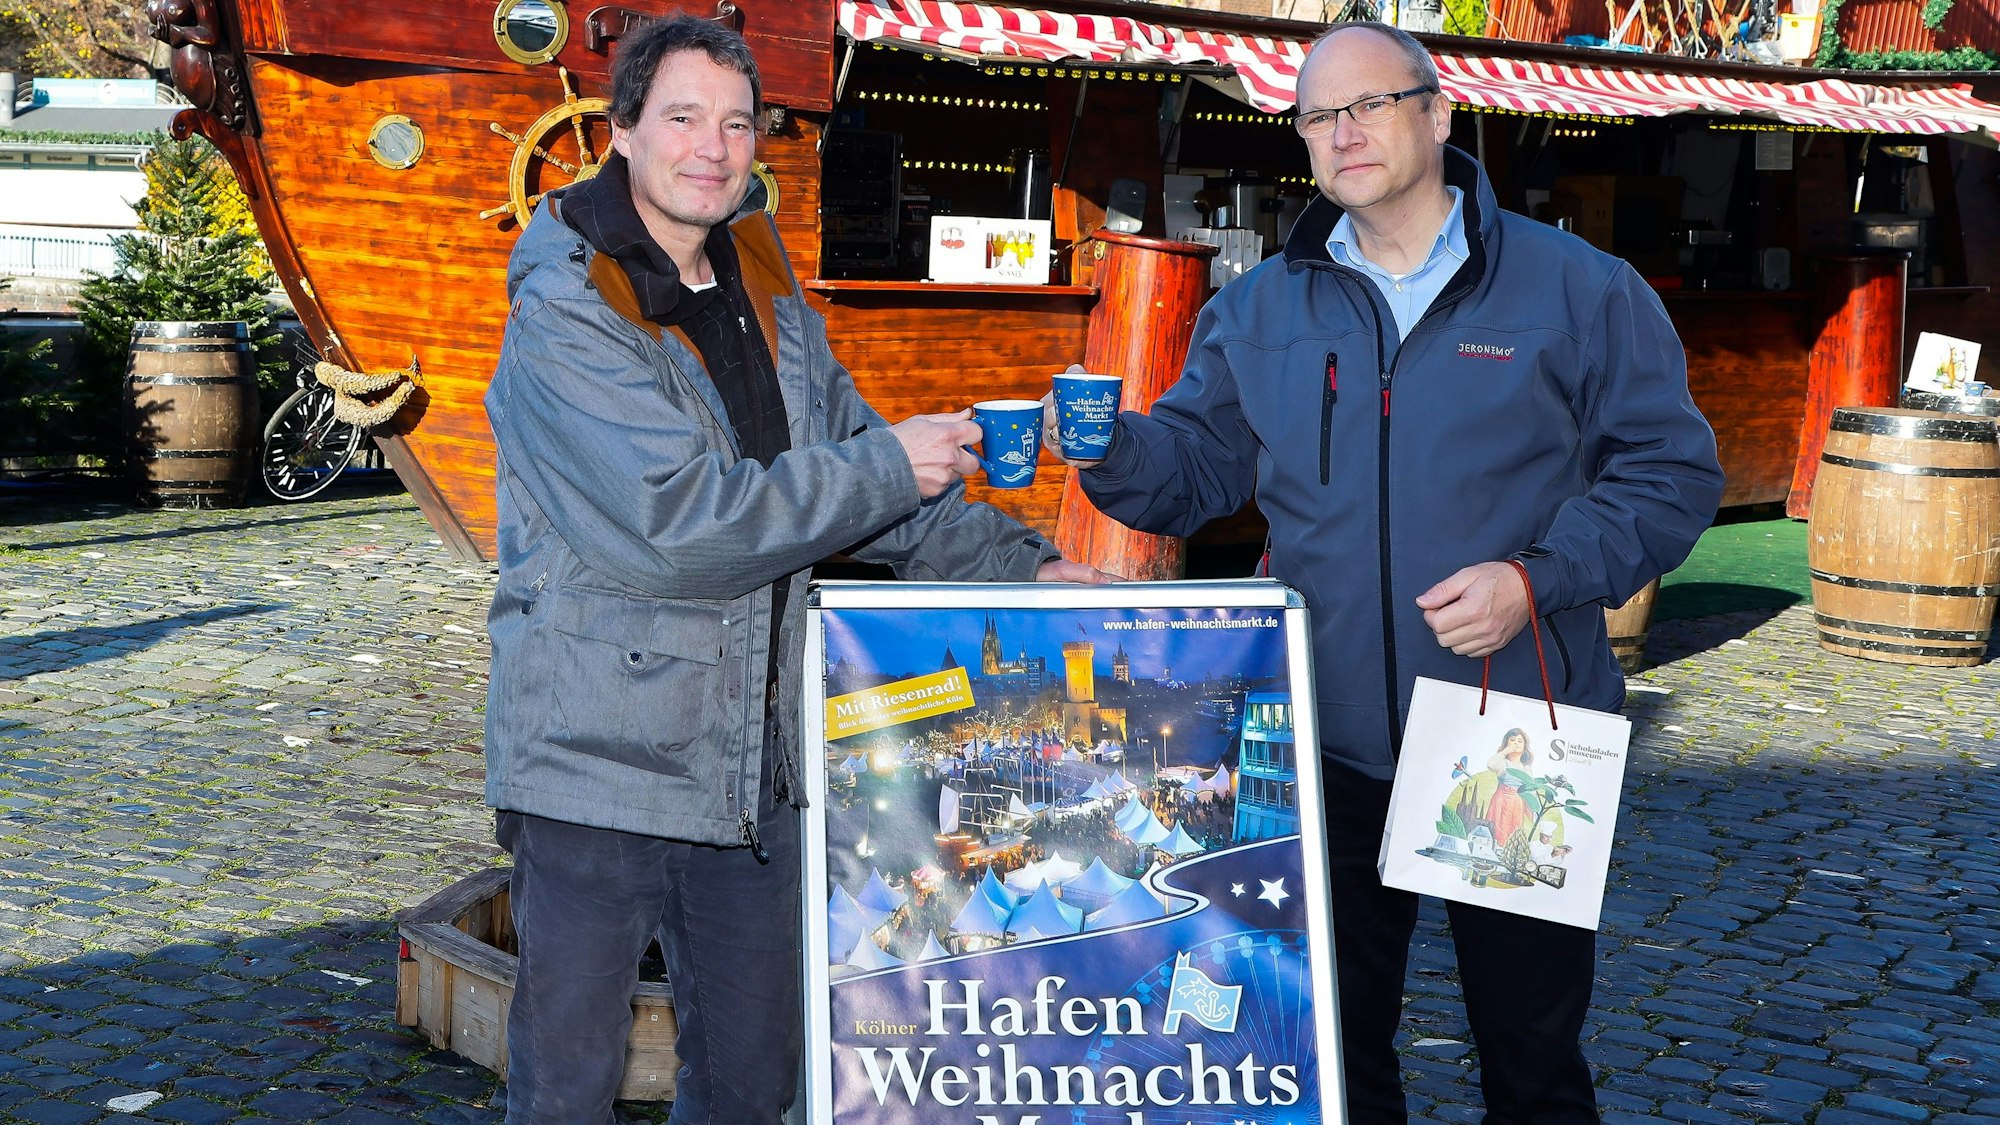 Weihnachtsmarkt-Veranstalter Edwin Kroll und Klaus H. Schopen, Pressesprecher Schokomuseum, stellen das neue Programm vor.